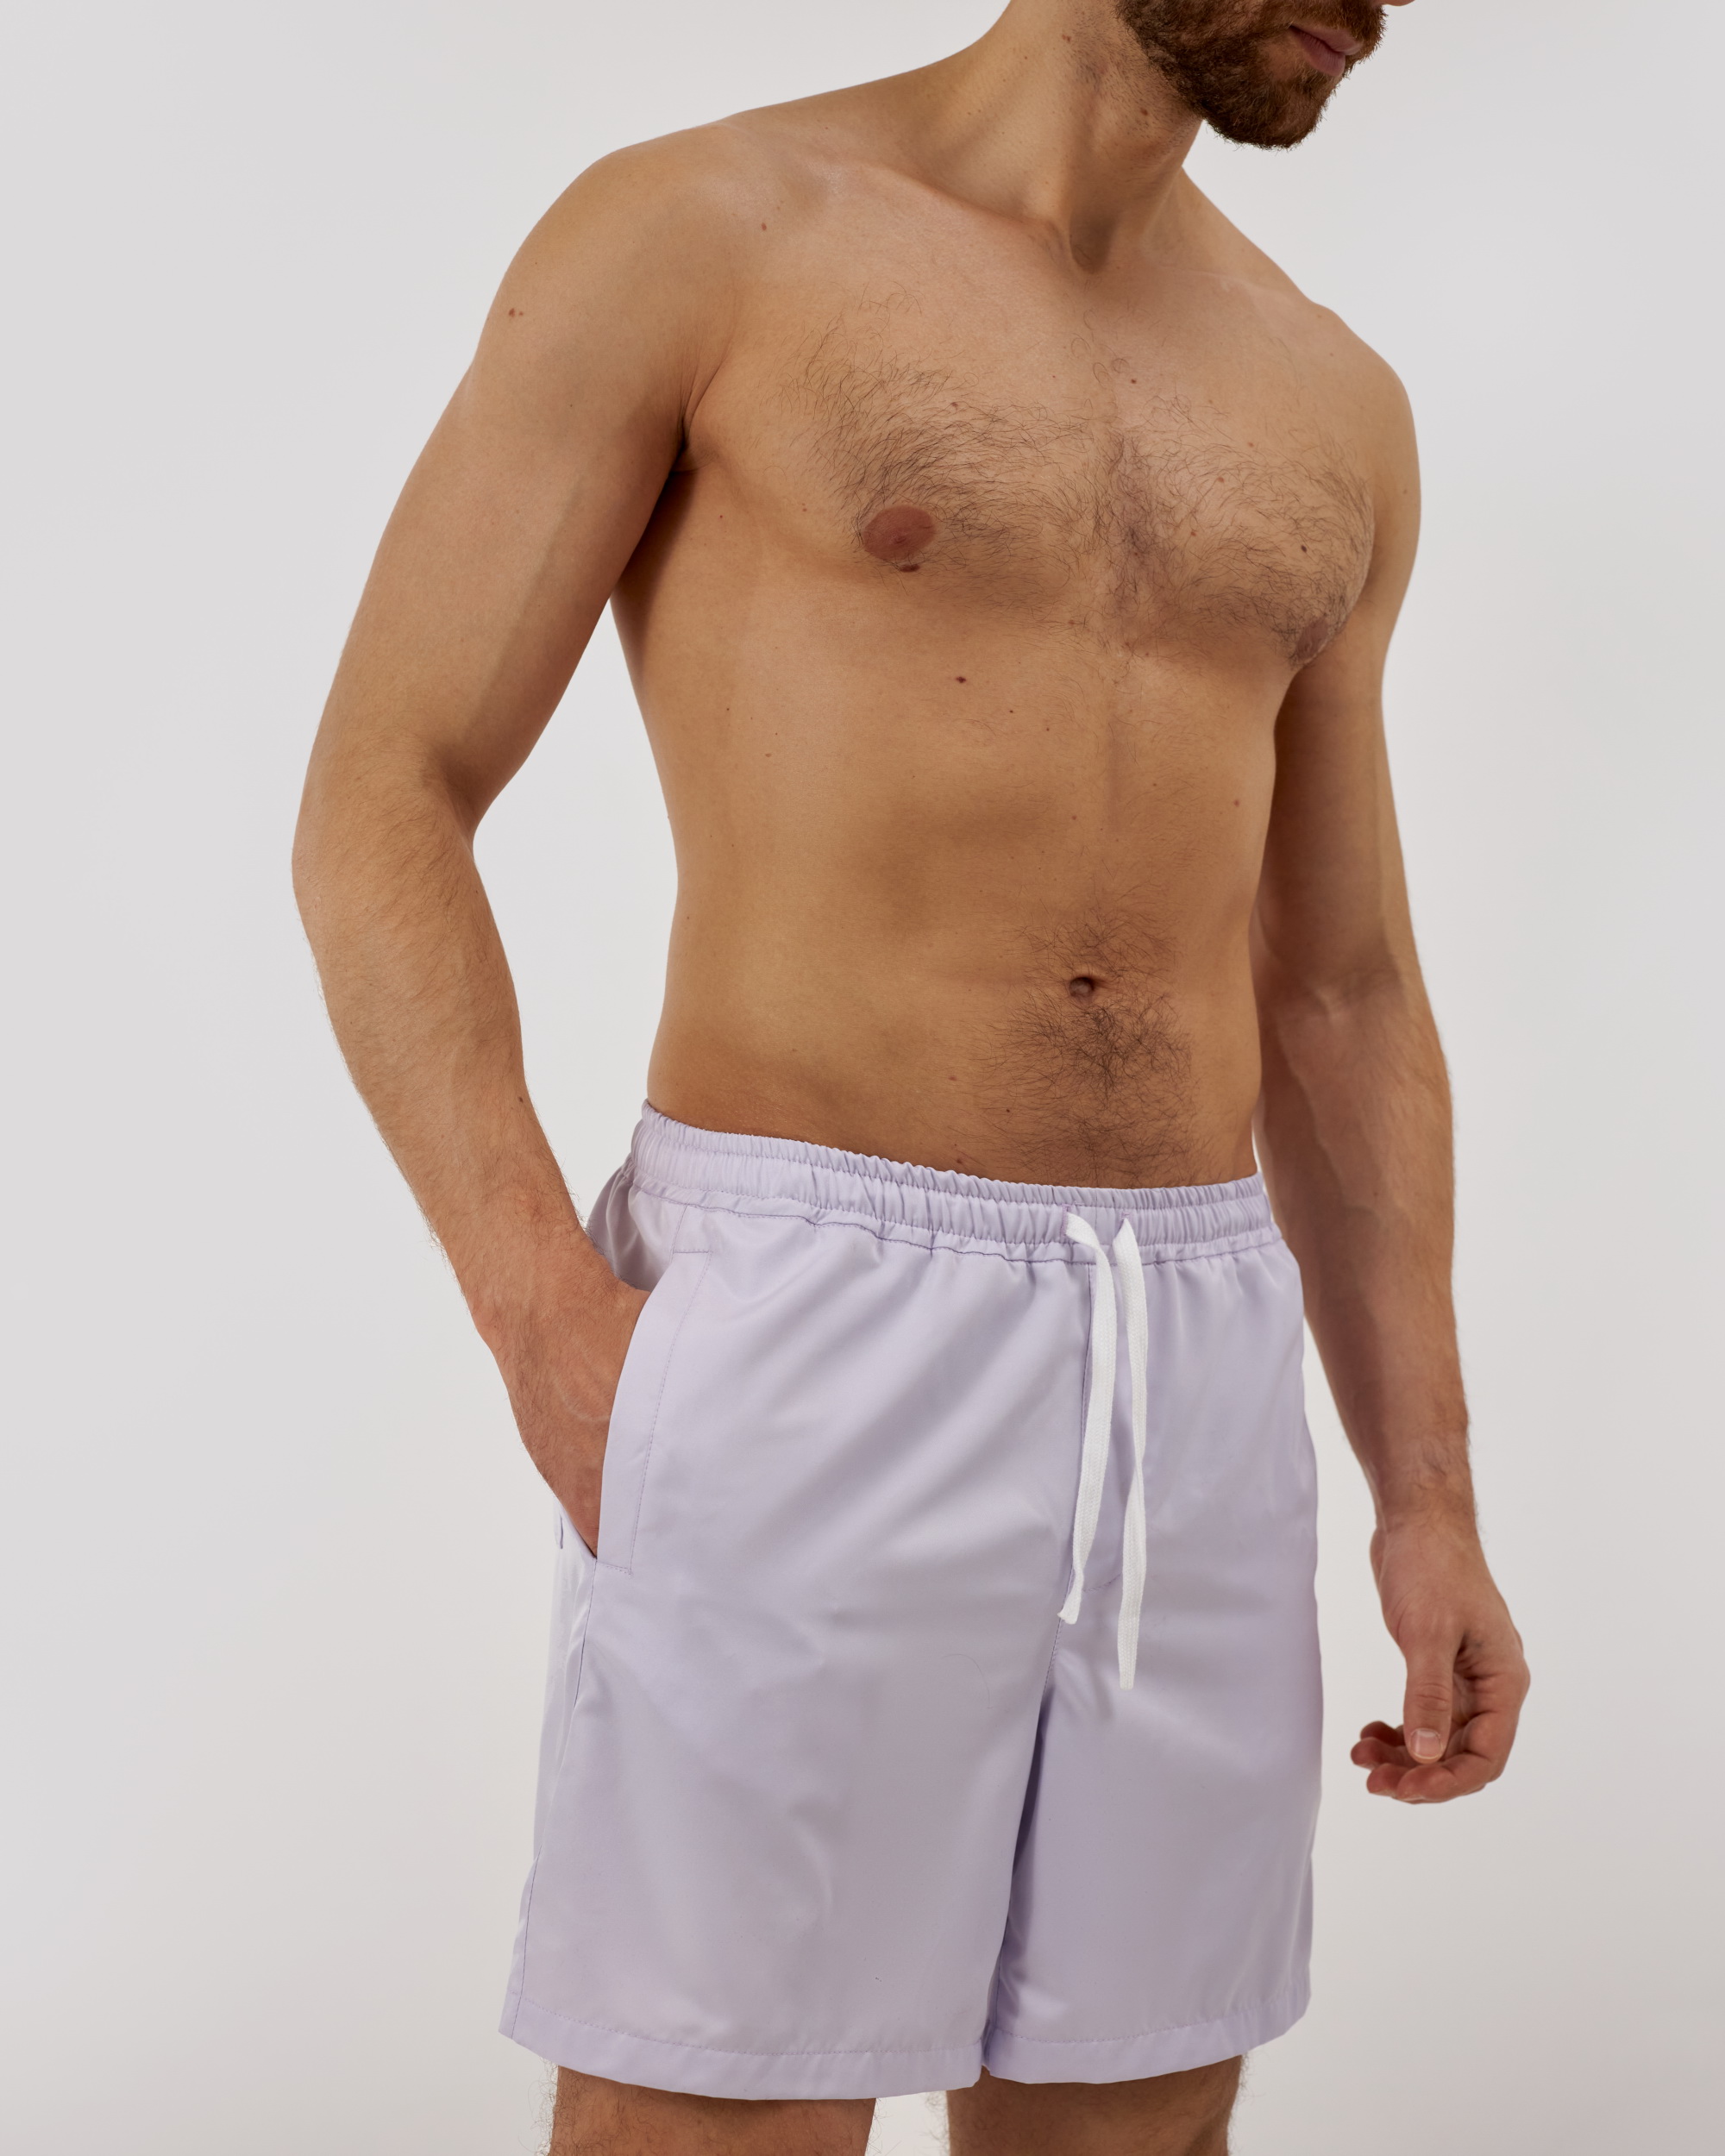 Мужская пижама выкройка брюк